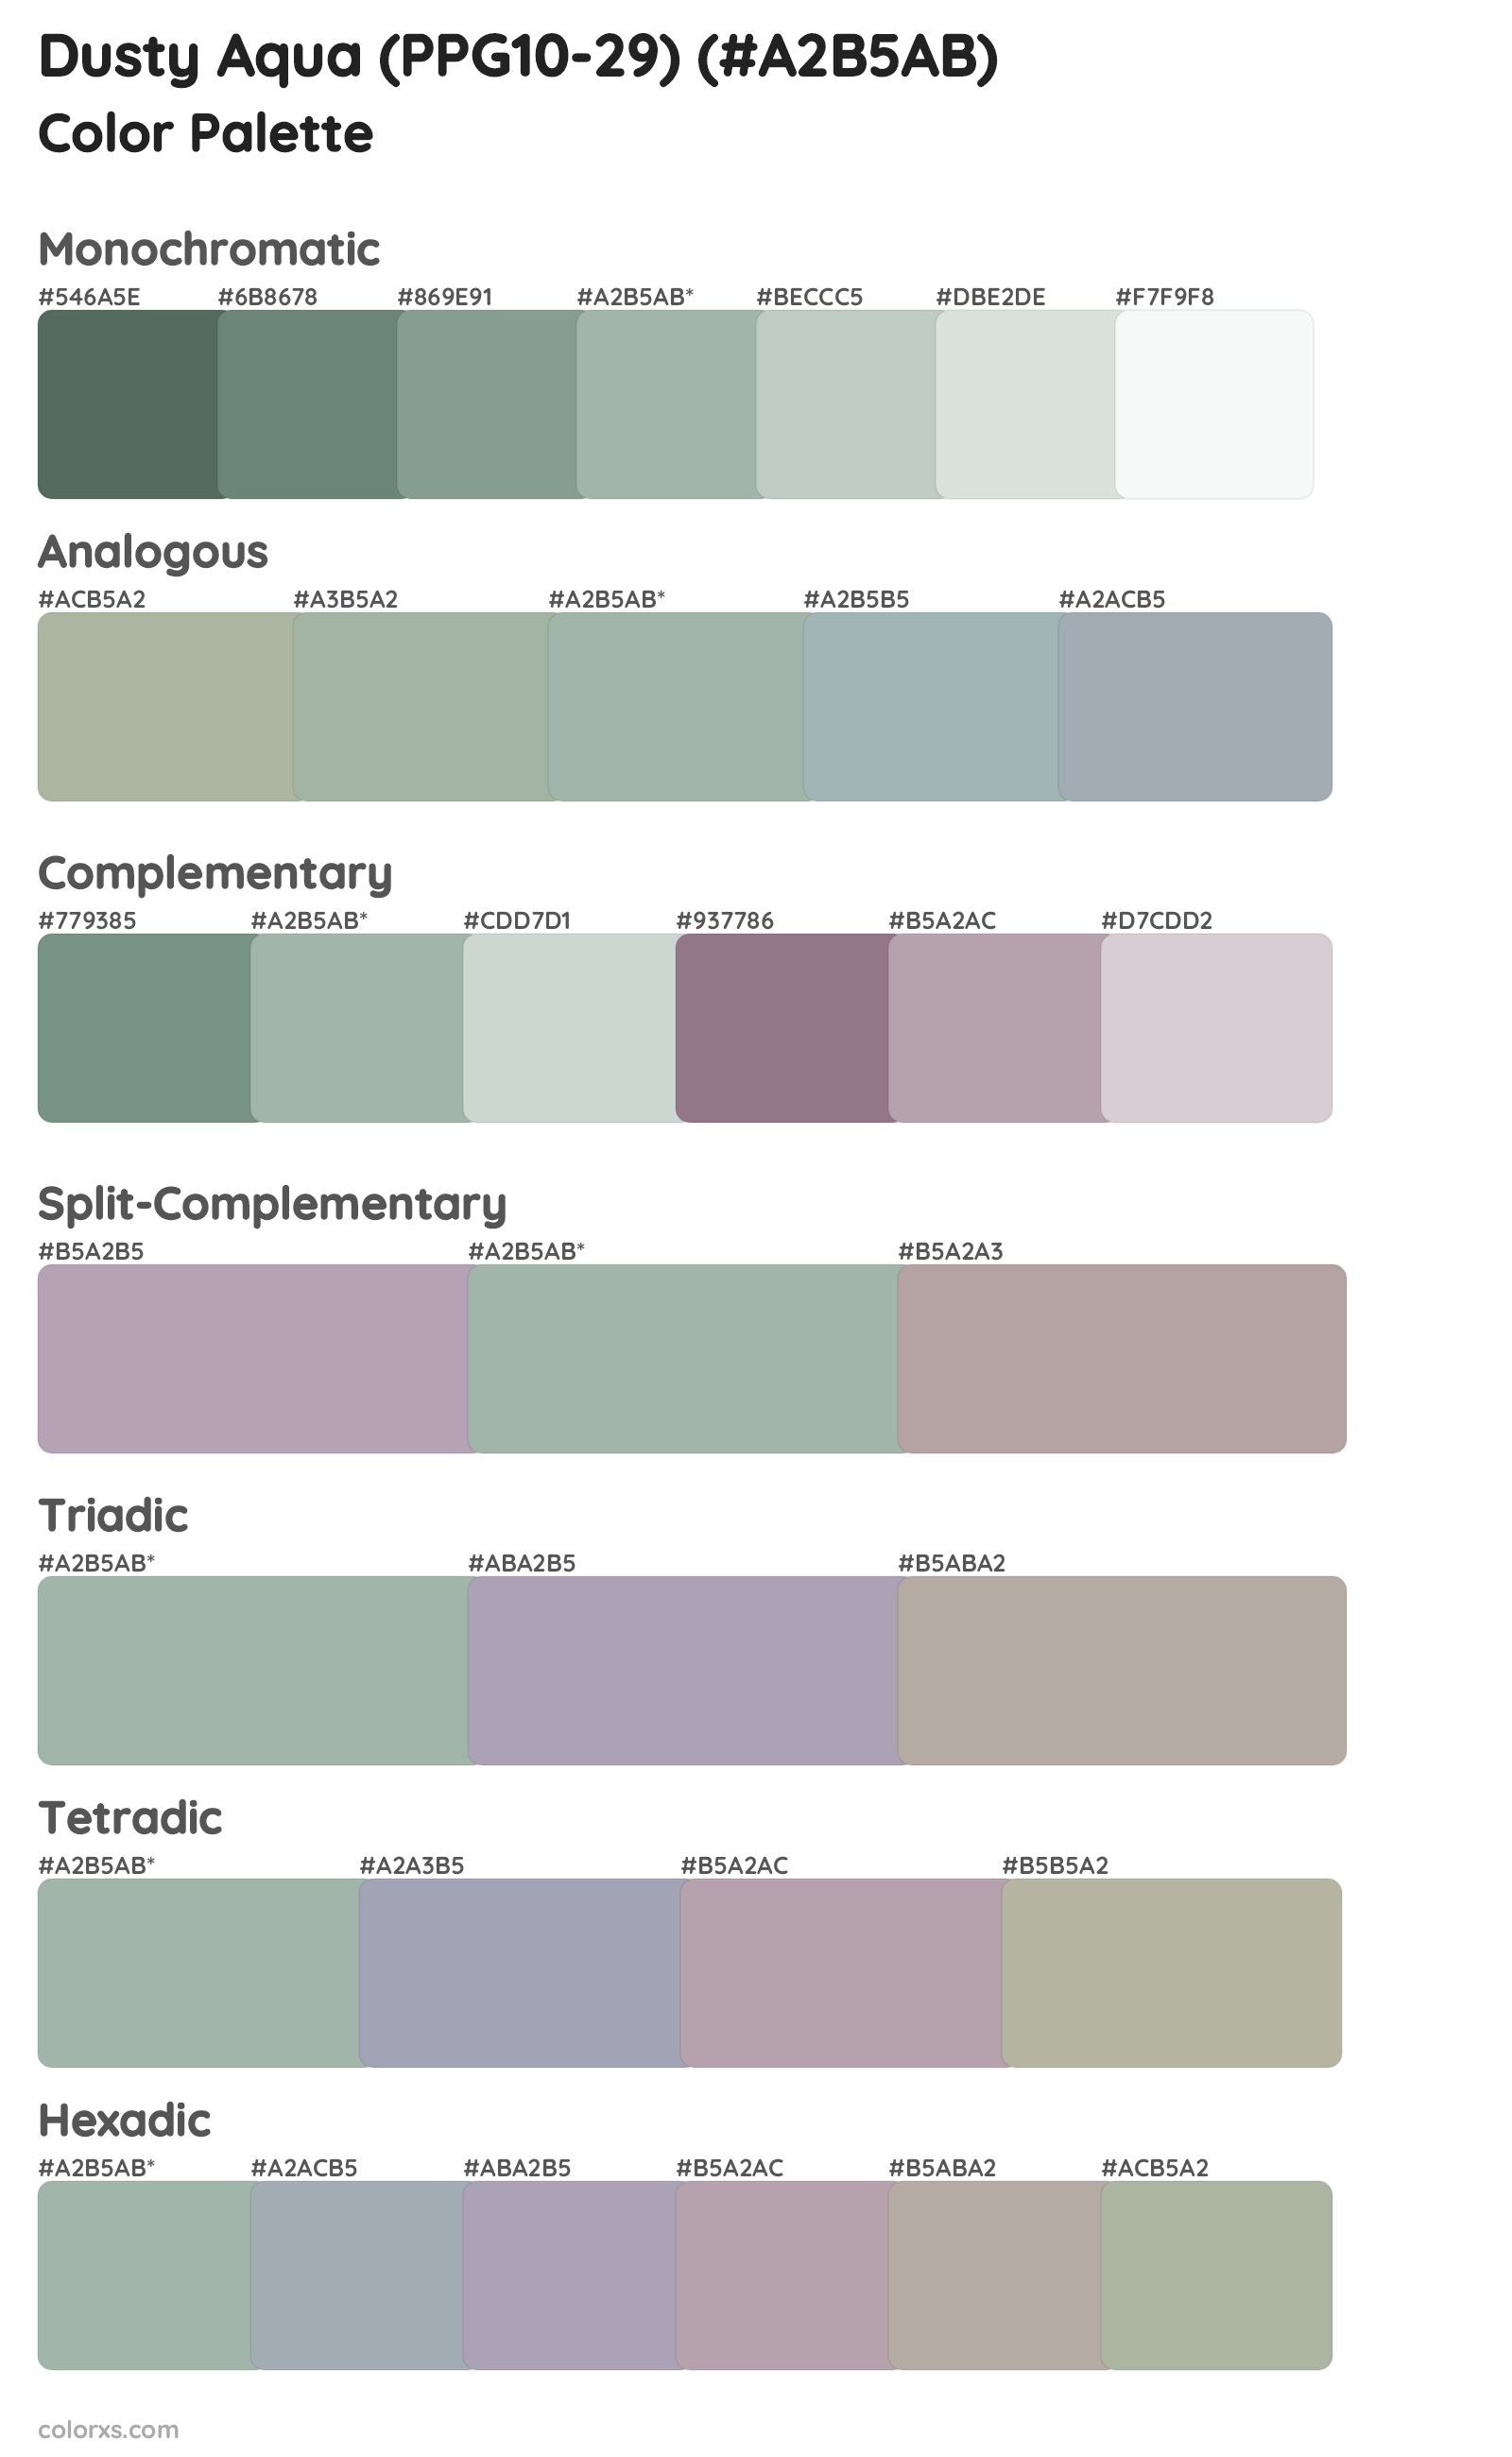 Dusty Aqua (PPG10-29) Color Scheme Palettes